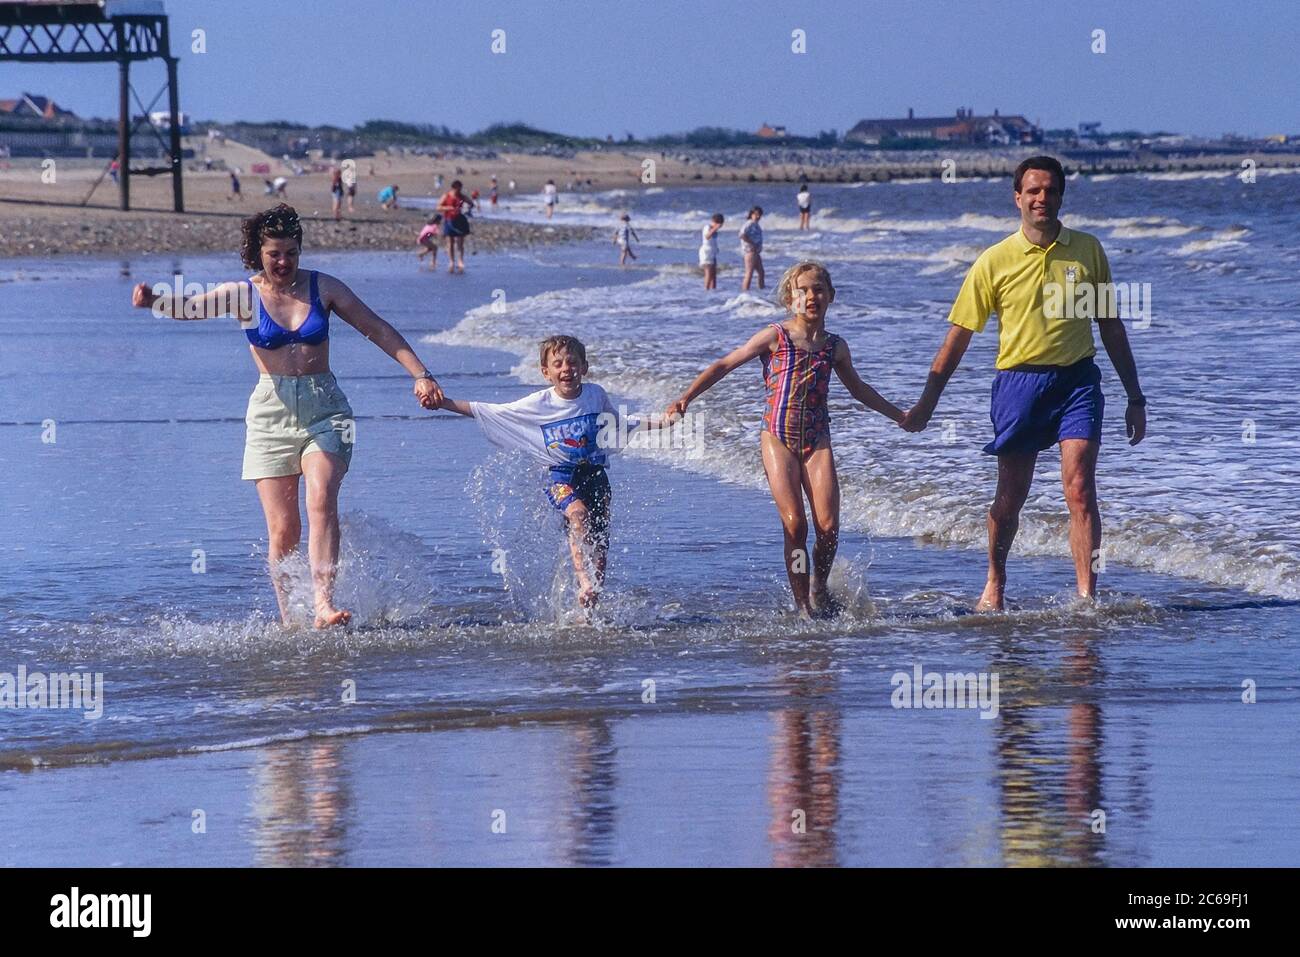 Glückliche junge Familie, die Hände hält und am Meer an einem Sandstrand läuft, Skegness, Lincolnshire, England, Großbritannien Stockfoto